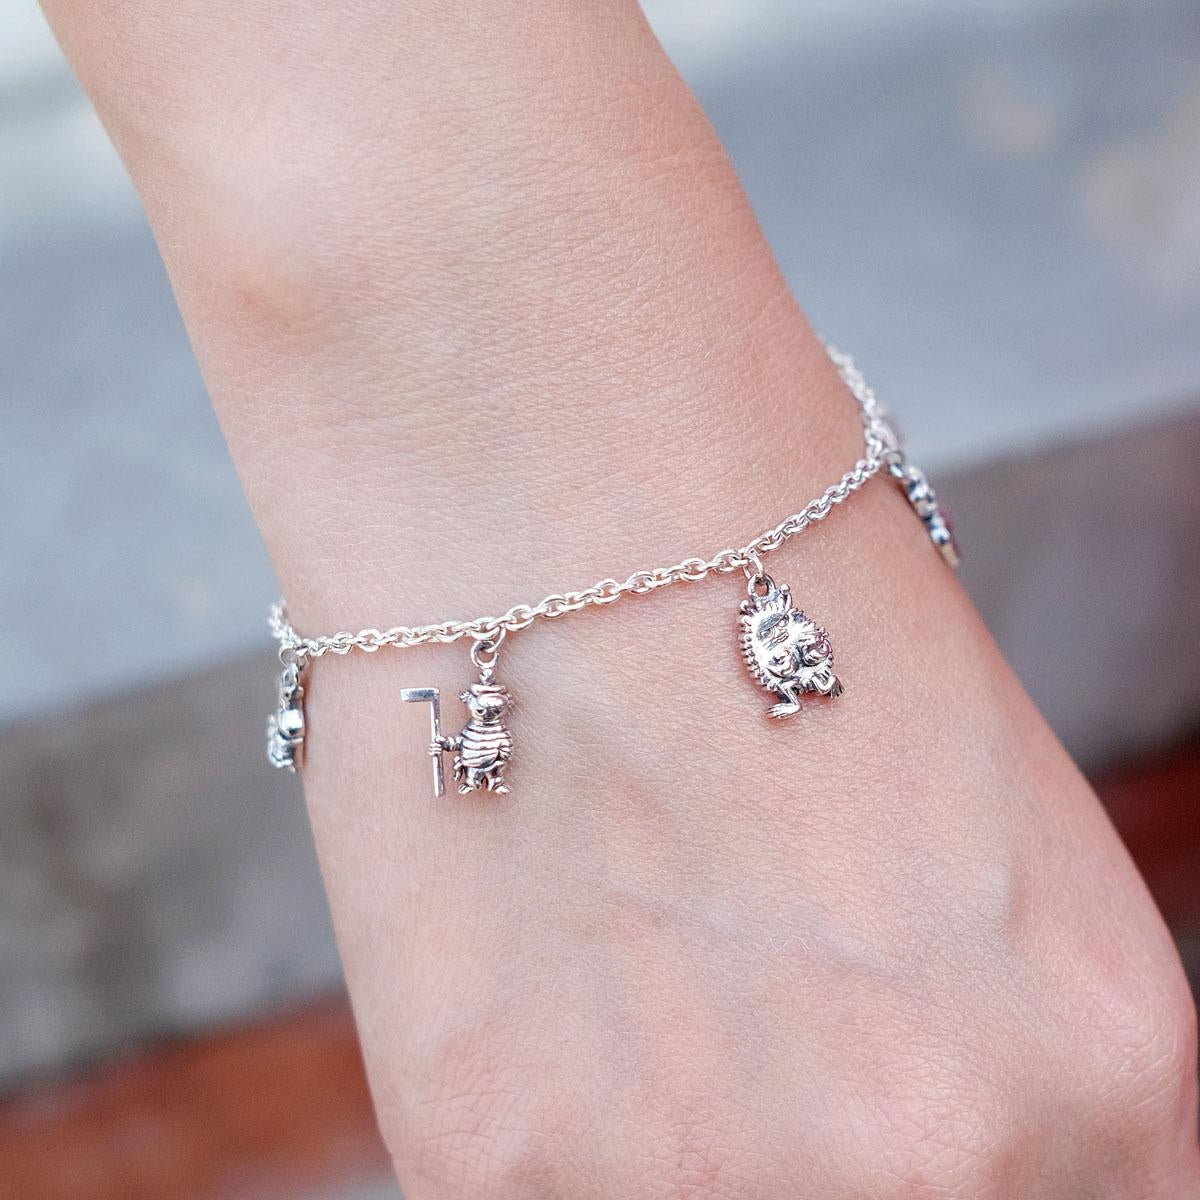 Moomin Friends Silver Bracelet